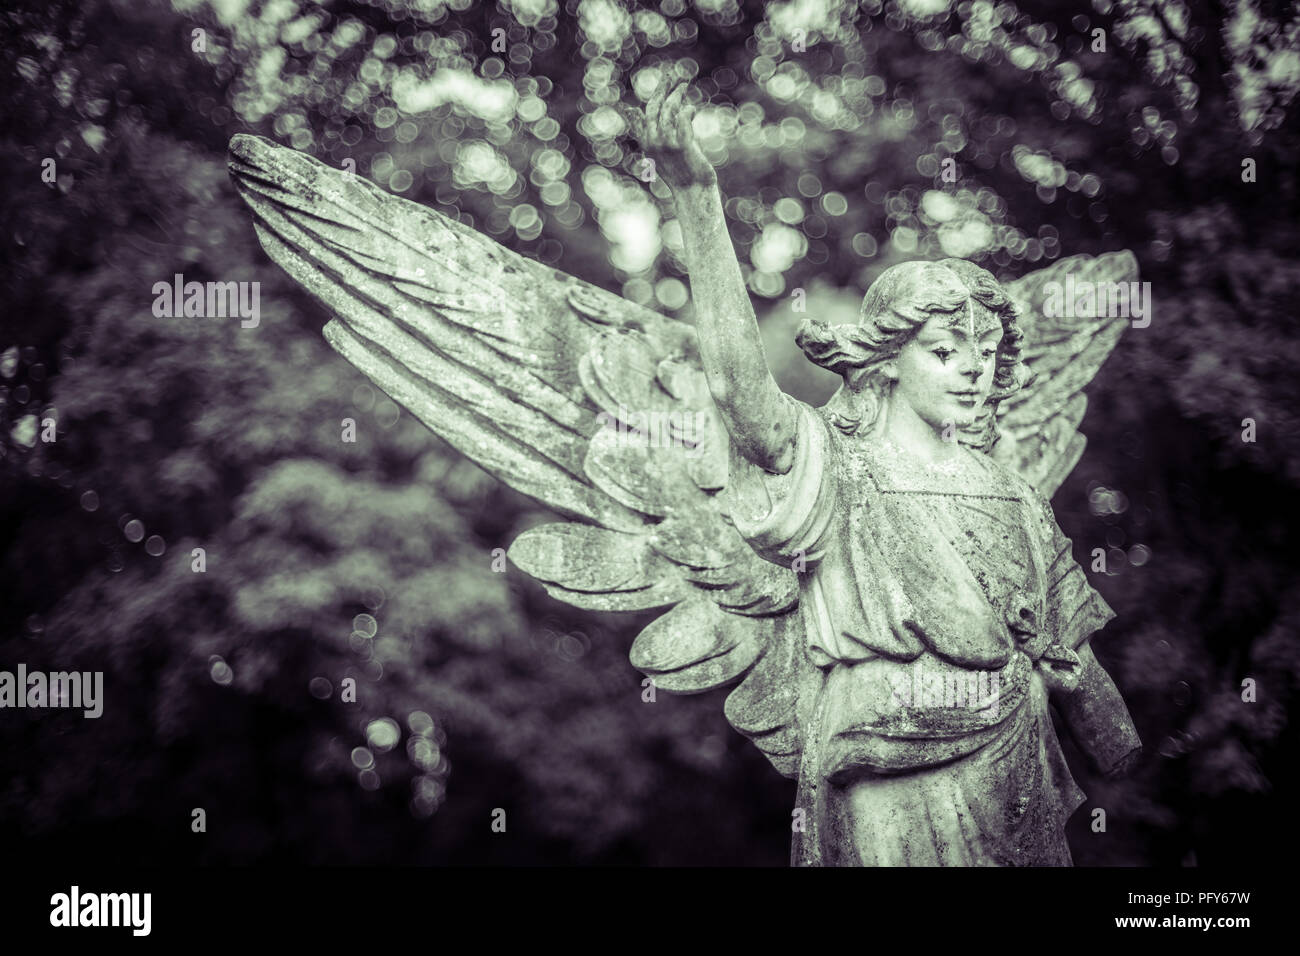 Angel sculpture sur pierre à l'ancien cimetière à Southampton en monochrome, Southampton, Angleterre, Royaume-Uni Banque D'Images